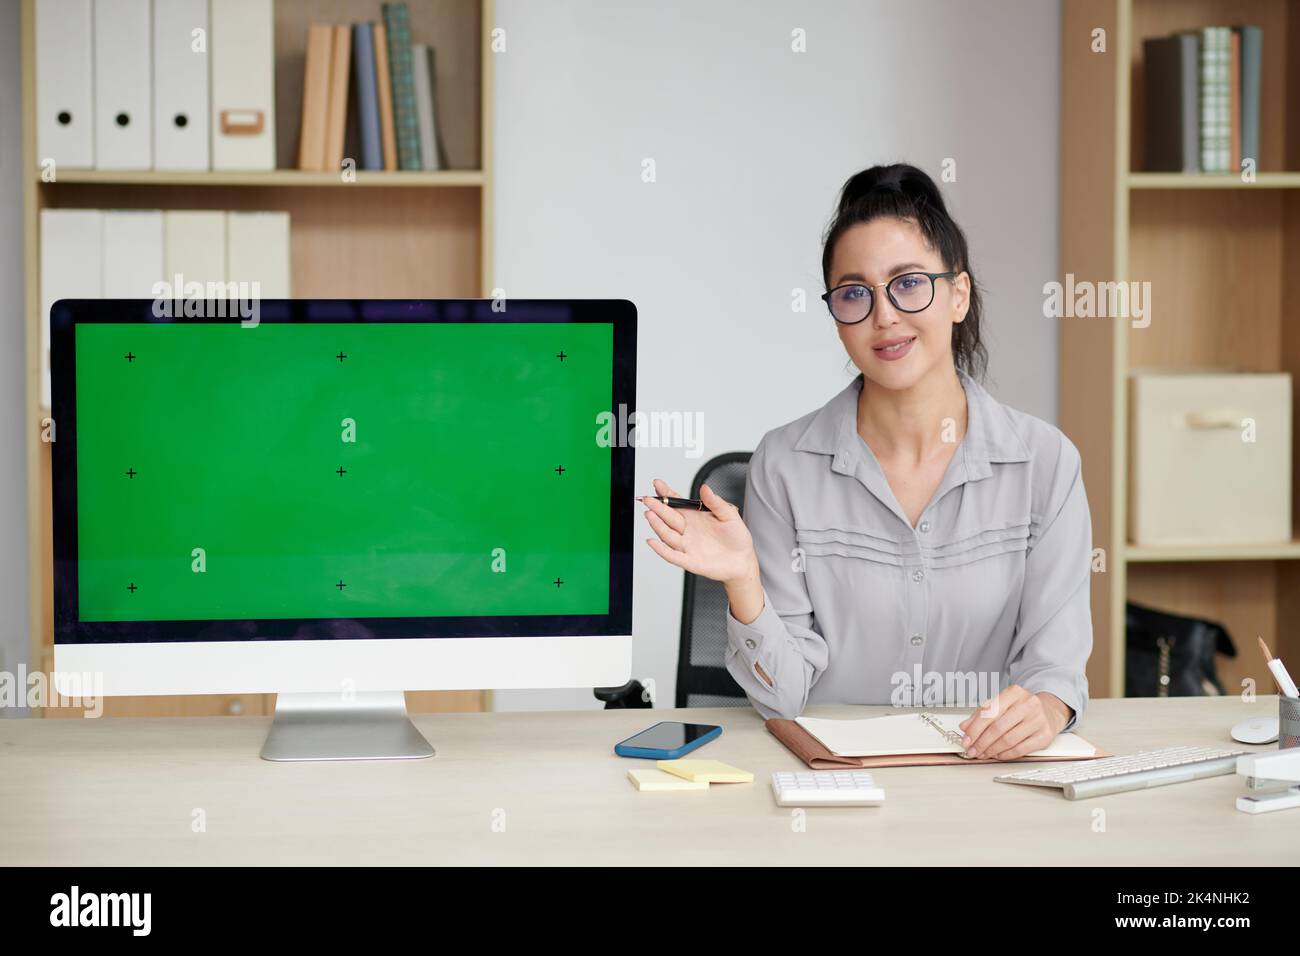 Junge Brünette Geschäftsfrau in Brillen und Casualwear macht Präsentation der neuen Anwendung, während sie auf leeren grünen Bildschirm zeigt Stockfoto